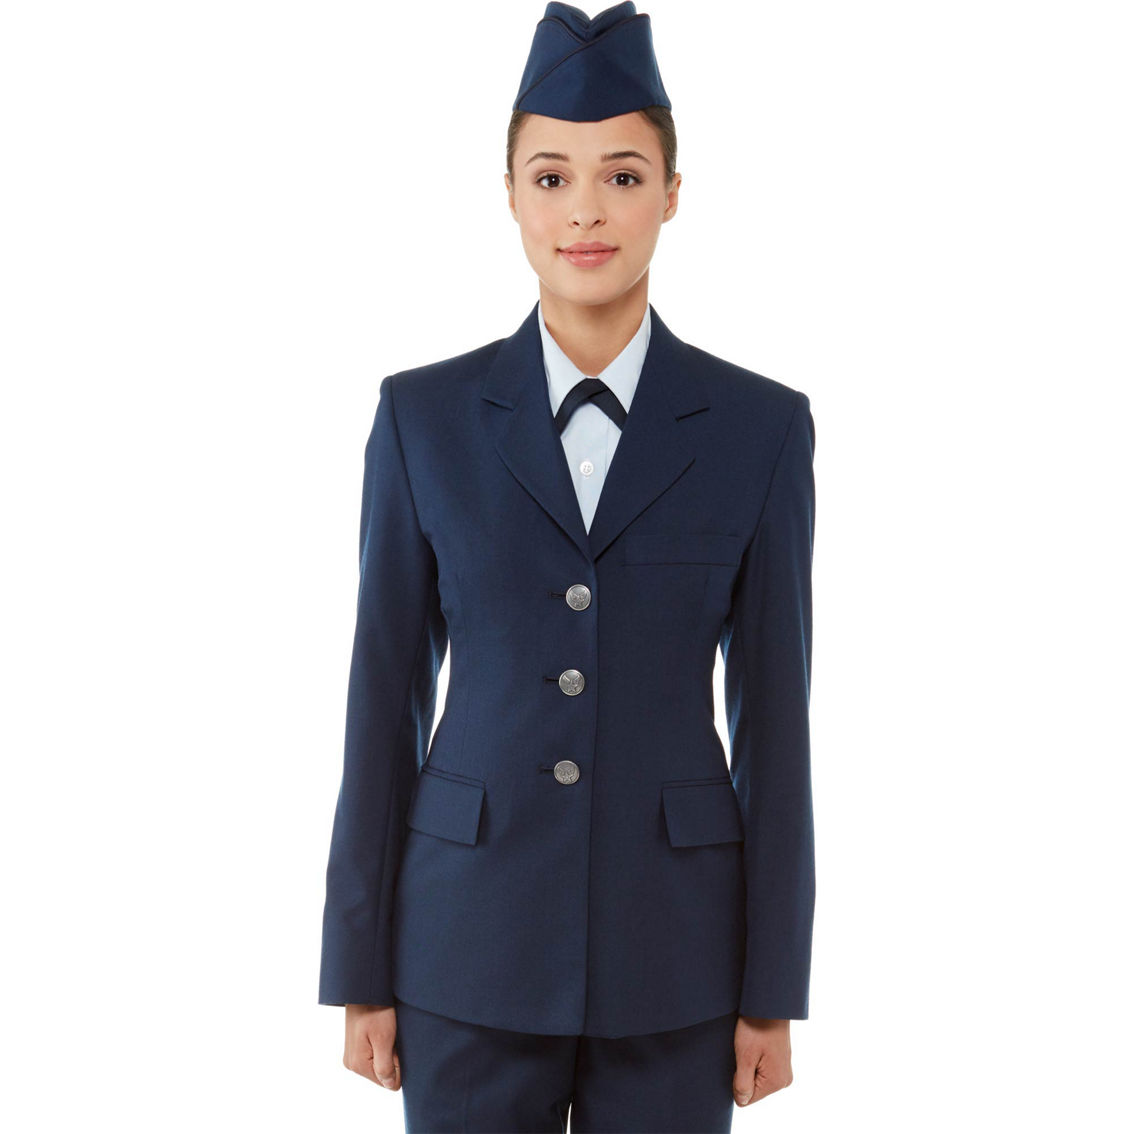 Air Force Blues  Air force women, Air force dress uniform, Air